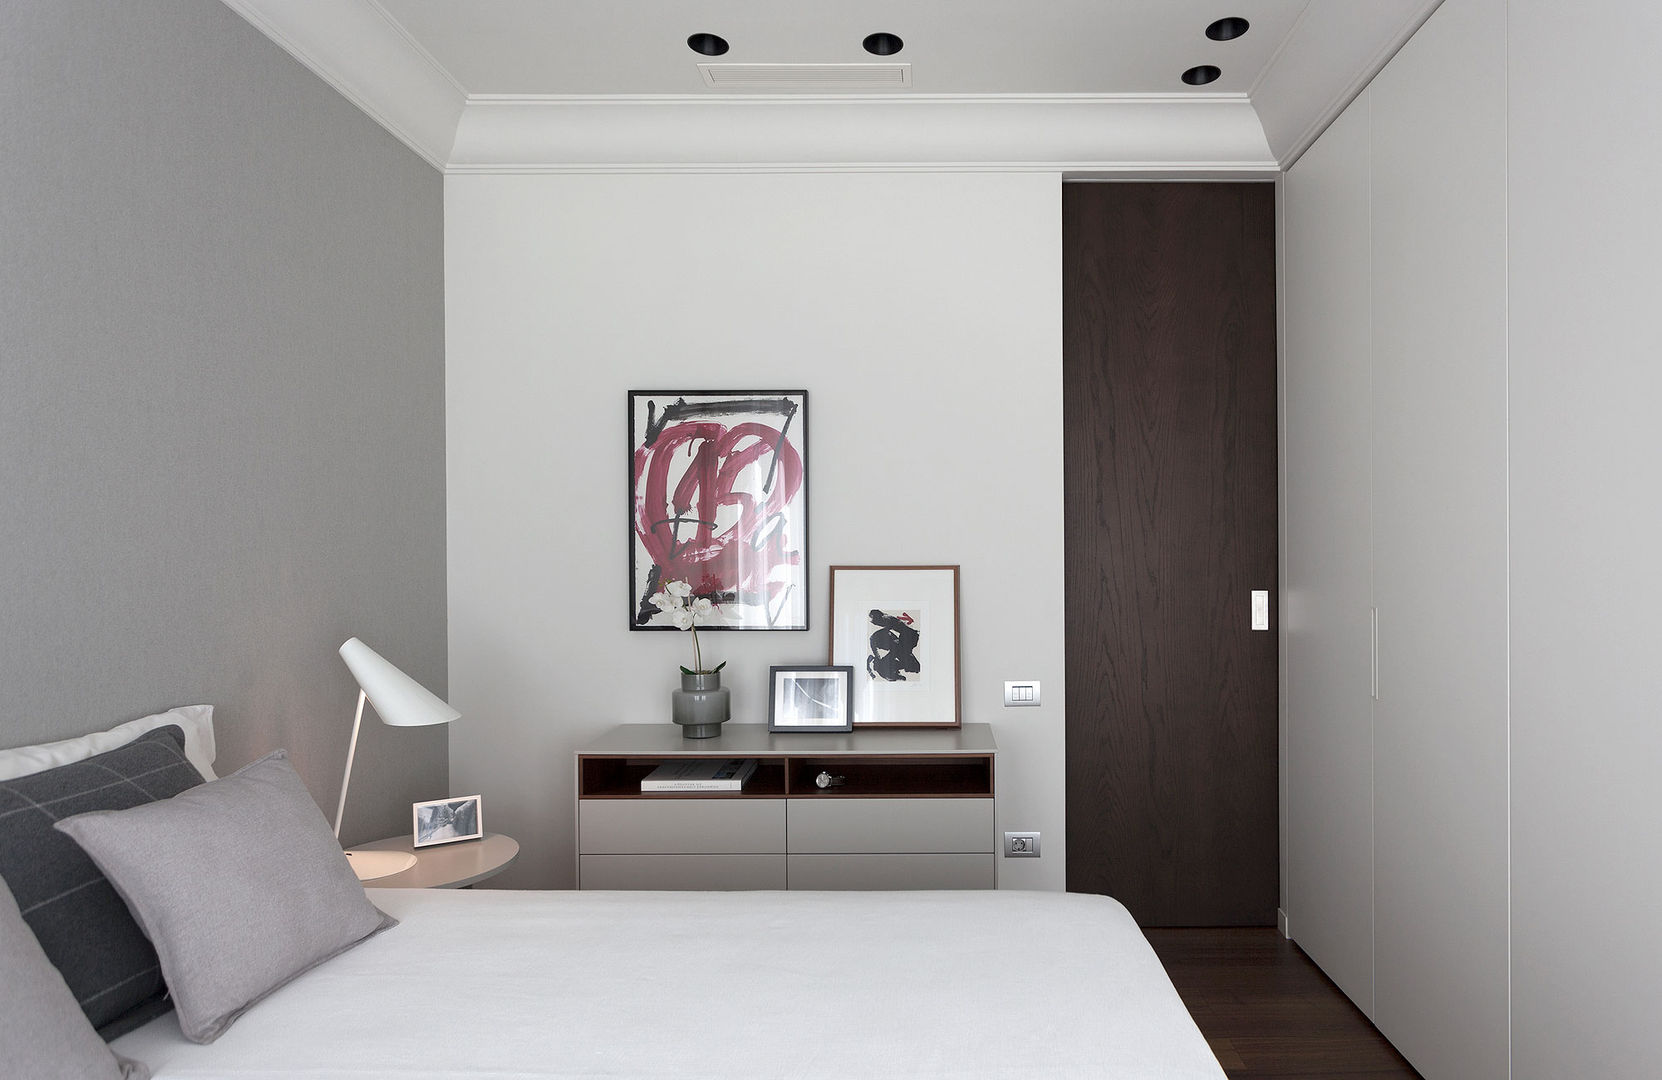 Dormitorio principal en tonos neutros decorado con arte MANUEL GARCÍA ASOCIADOS Habitaciones modernas